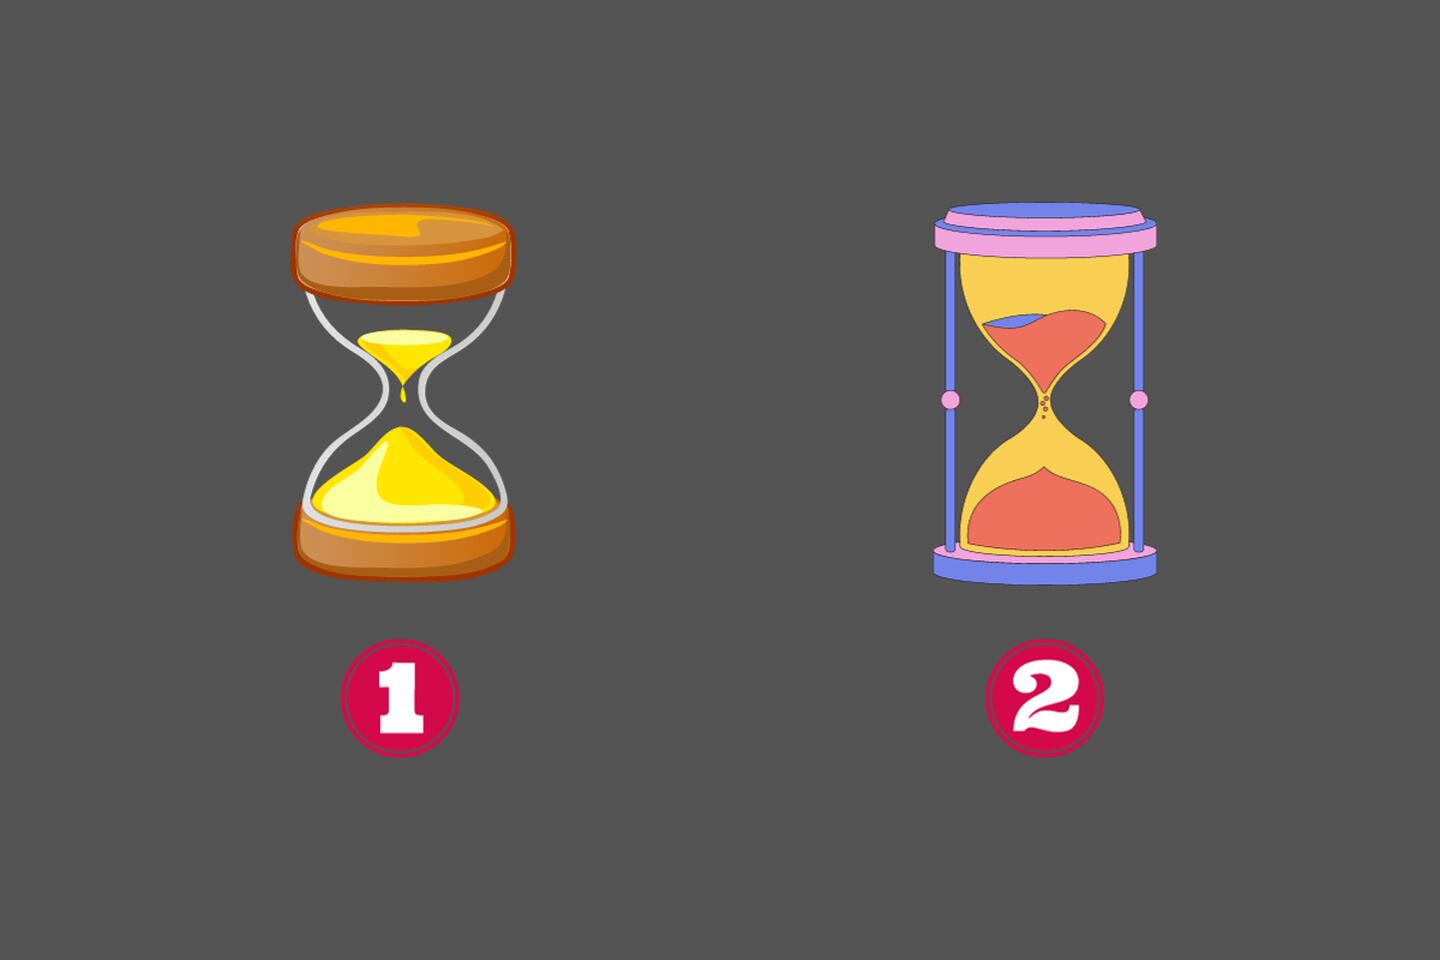 En este test de personalidad hay dos opciones: un reloj de arena de madera y otro azul con rojo.